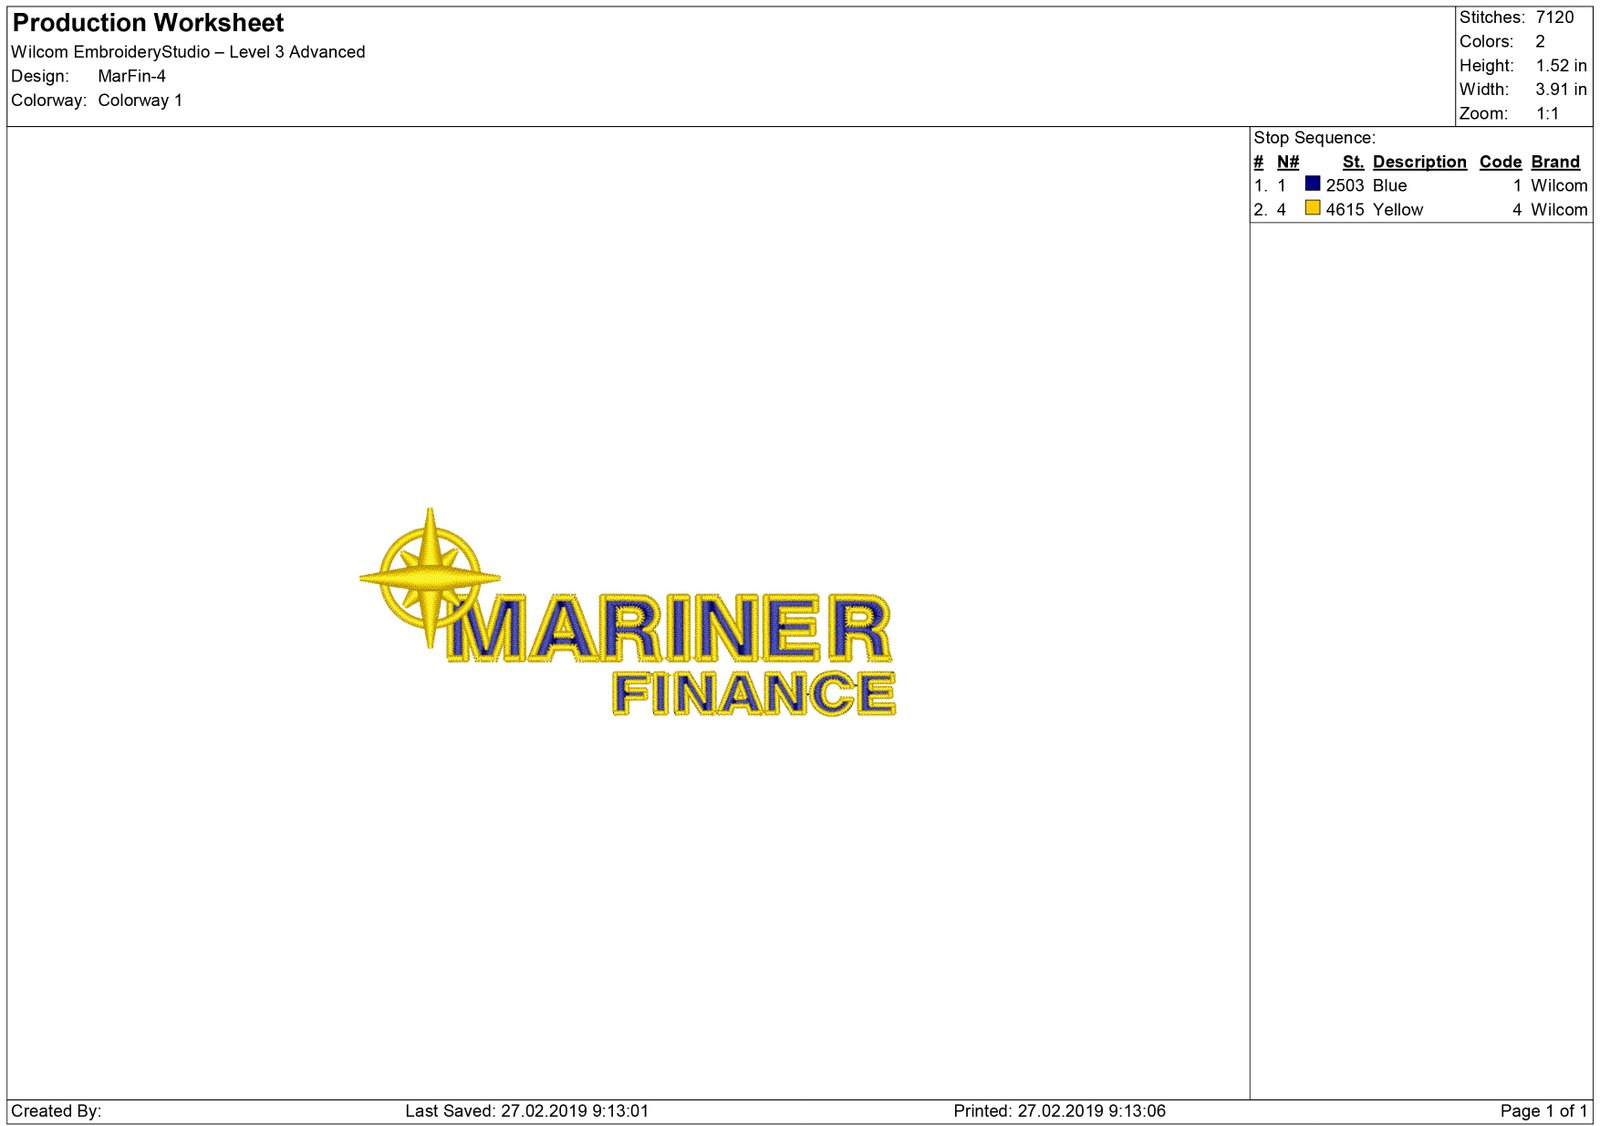 mariner finance